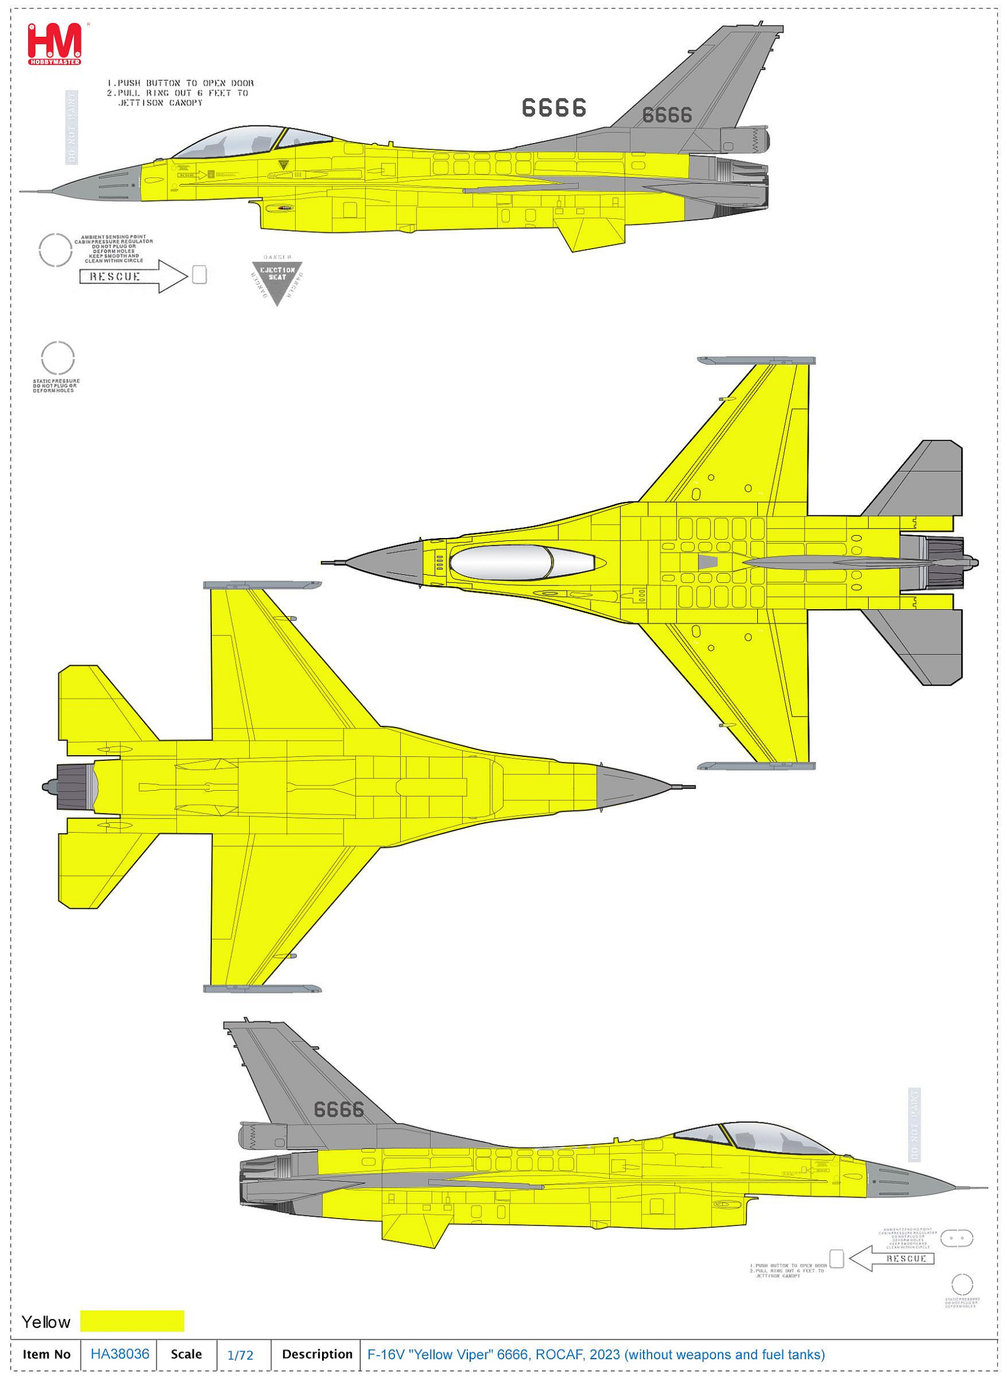 【魔玩達人】1/72 HM HA38036+HA38036b F-16V 國軍版 構改黃蛇 黃皮機 雙機組【新品預購】